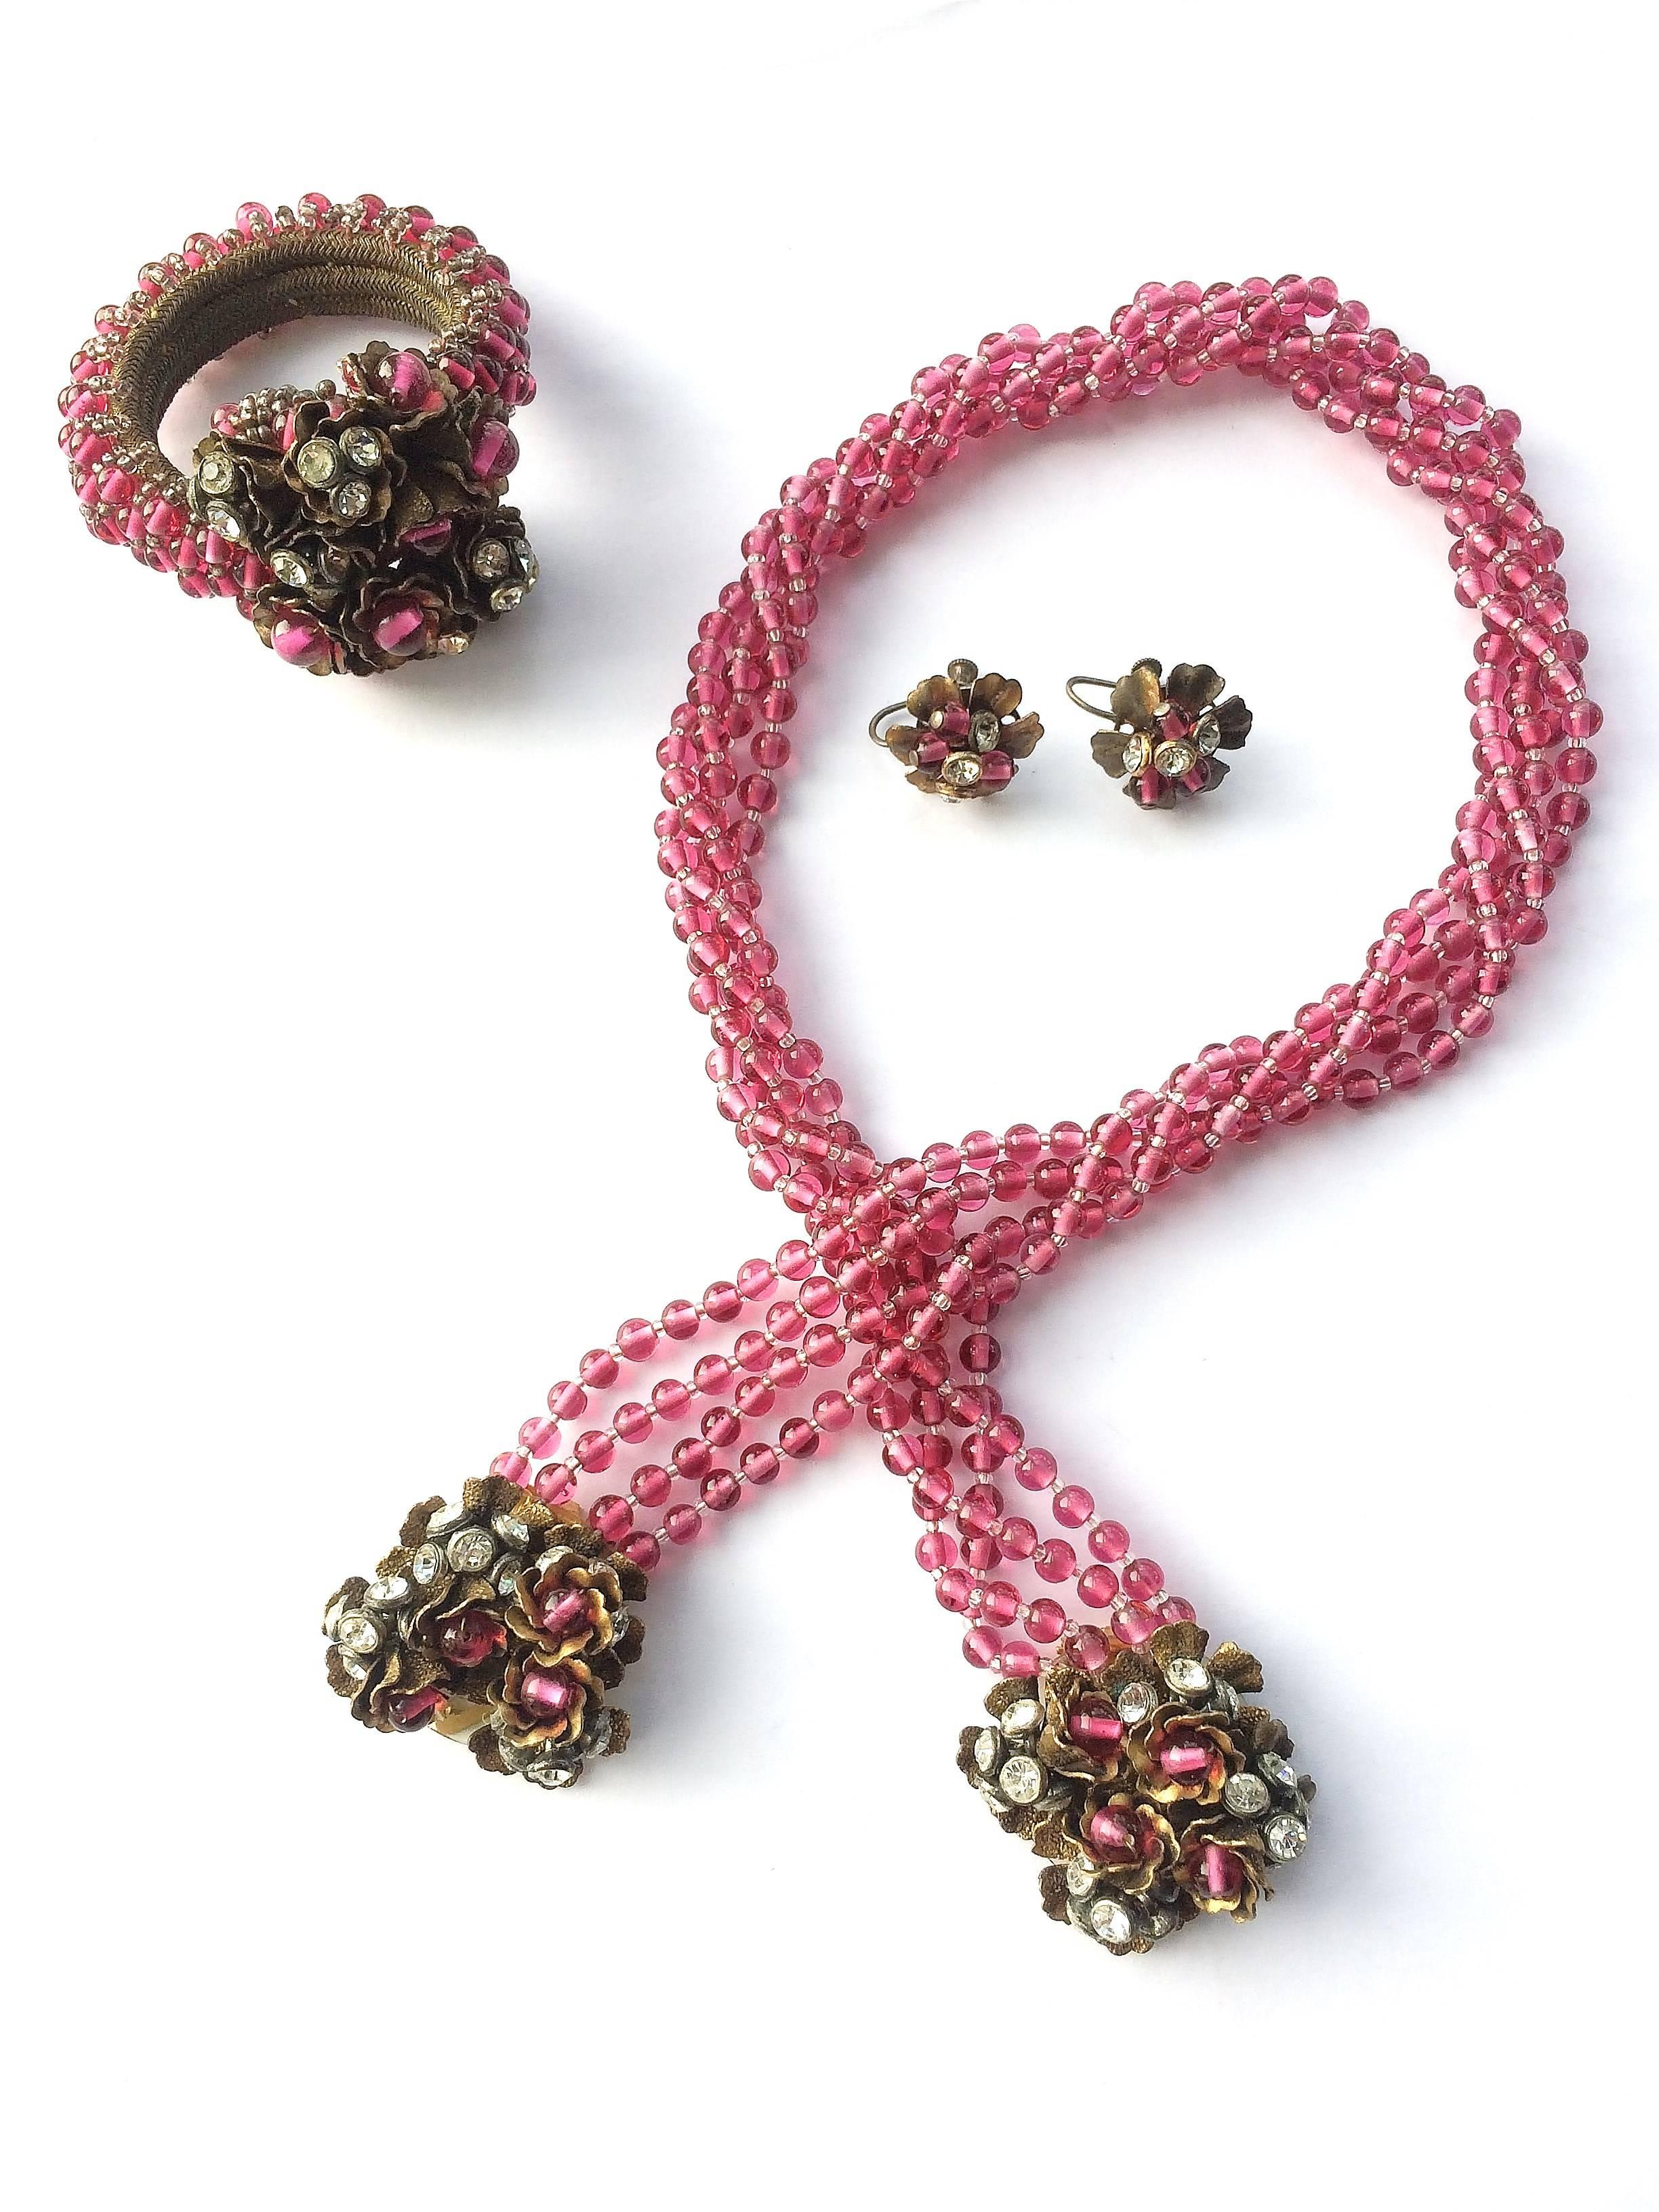 Wunderschöne dreiteilige Parure (Wickelhalskette mit Juwelenanhängern, Wickelarmband und passende Ohrringe), ein ikonisches Design aus den 1930er Jahren von Miriam Haskell. Die Halskette aus weichem cranberryfarbenem Pate de Verre-Glas wird um den